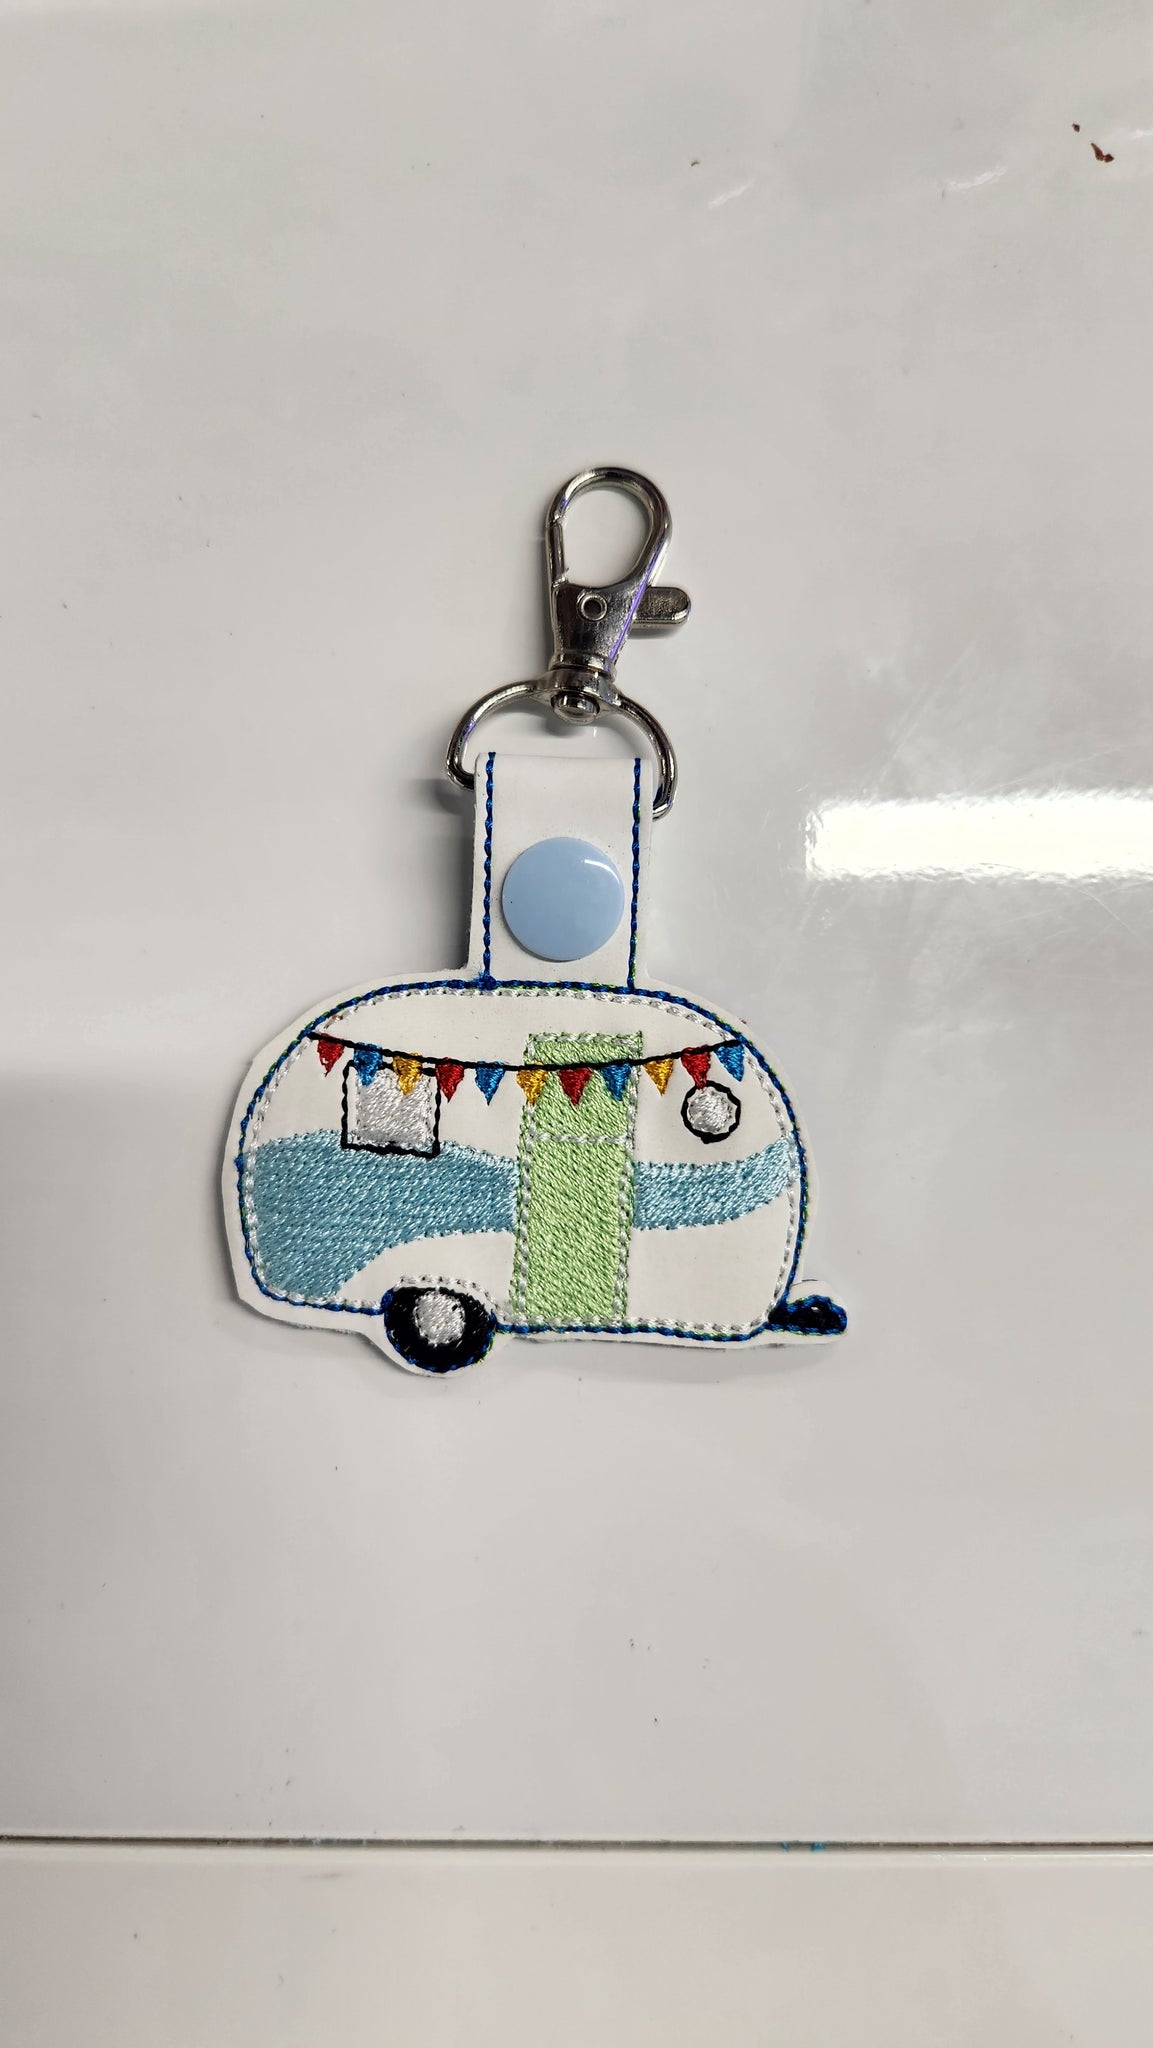 Camper key fob / bag clip